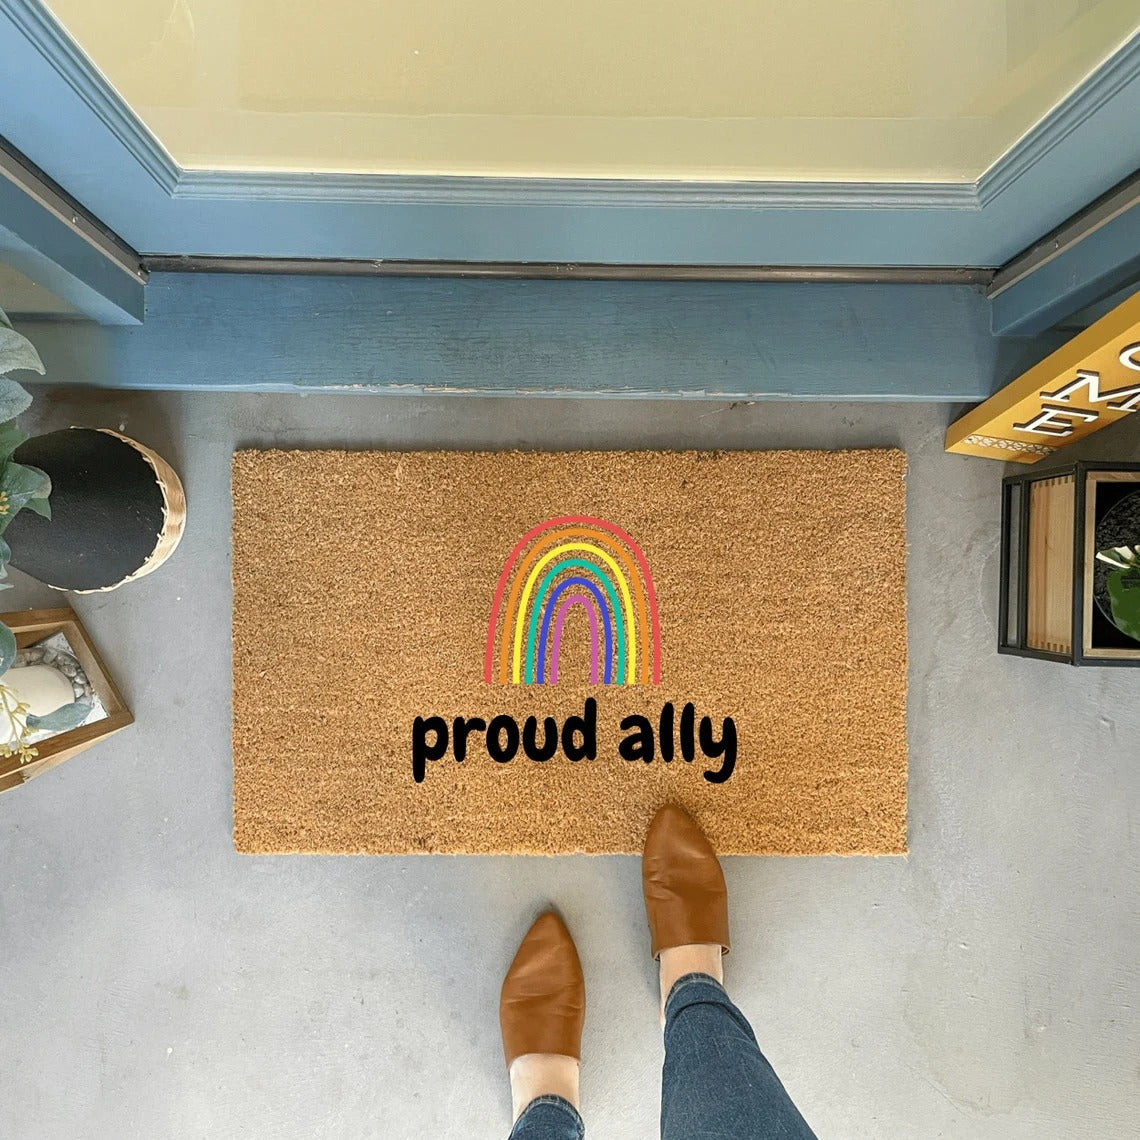 Proud Ally Doormat/ Gay Pride Decor Mat/ Pride Door Mat/ Queer Doormat/ All Are Welcome Here/ Outdoor Doormat